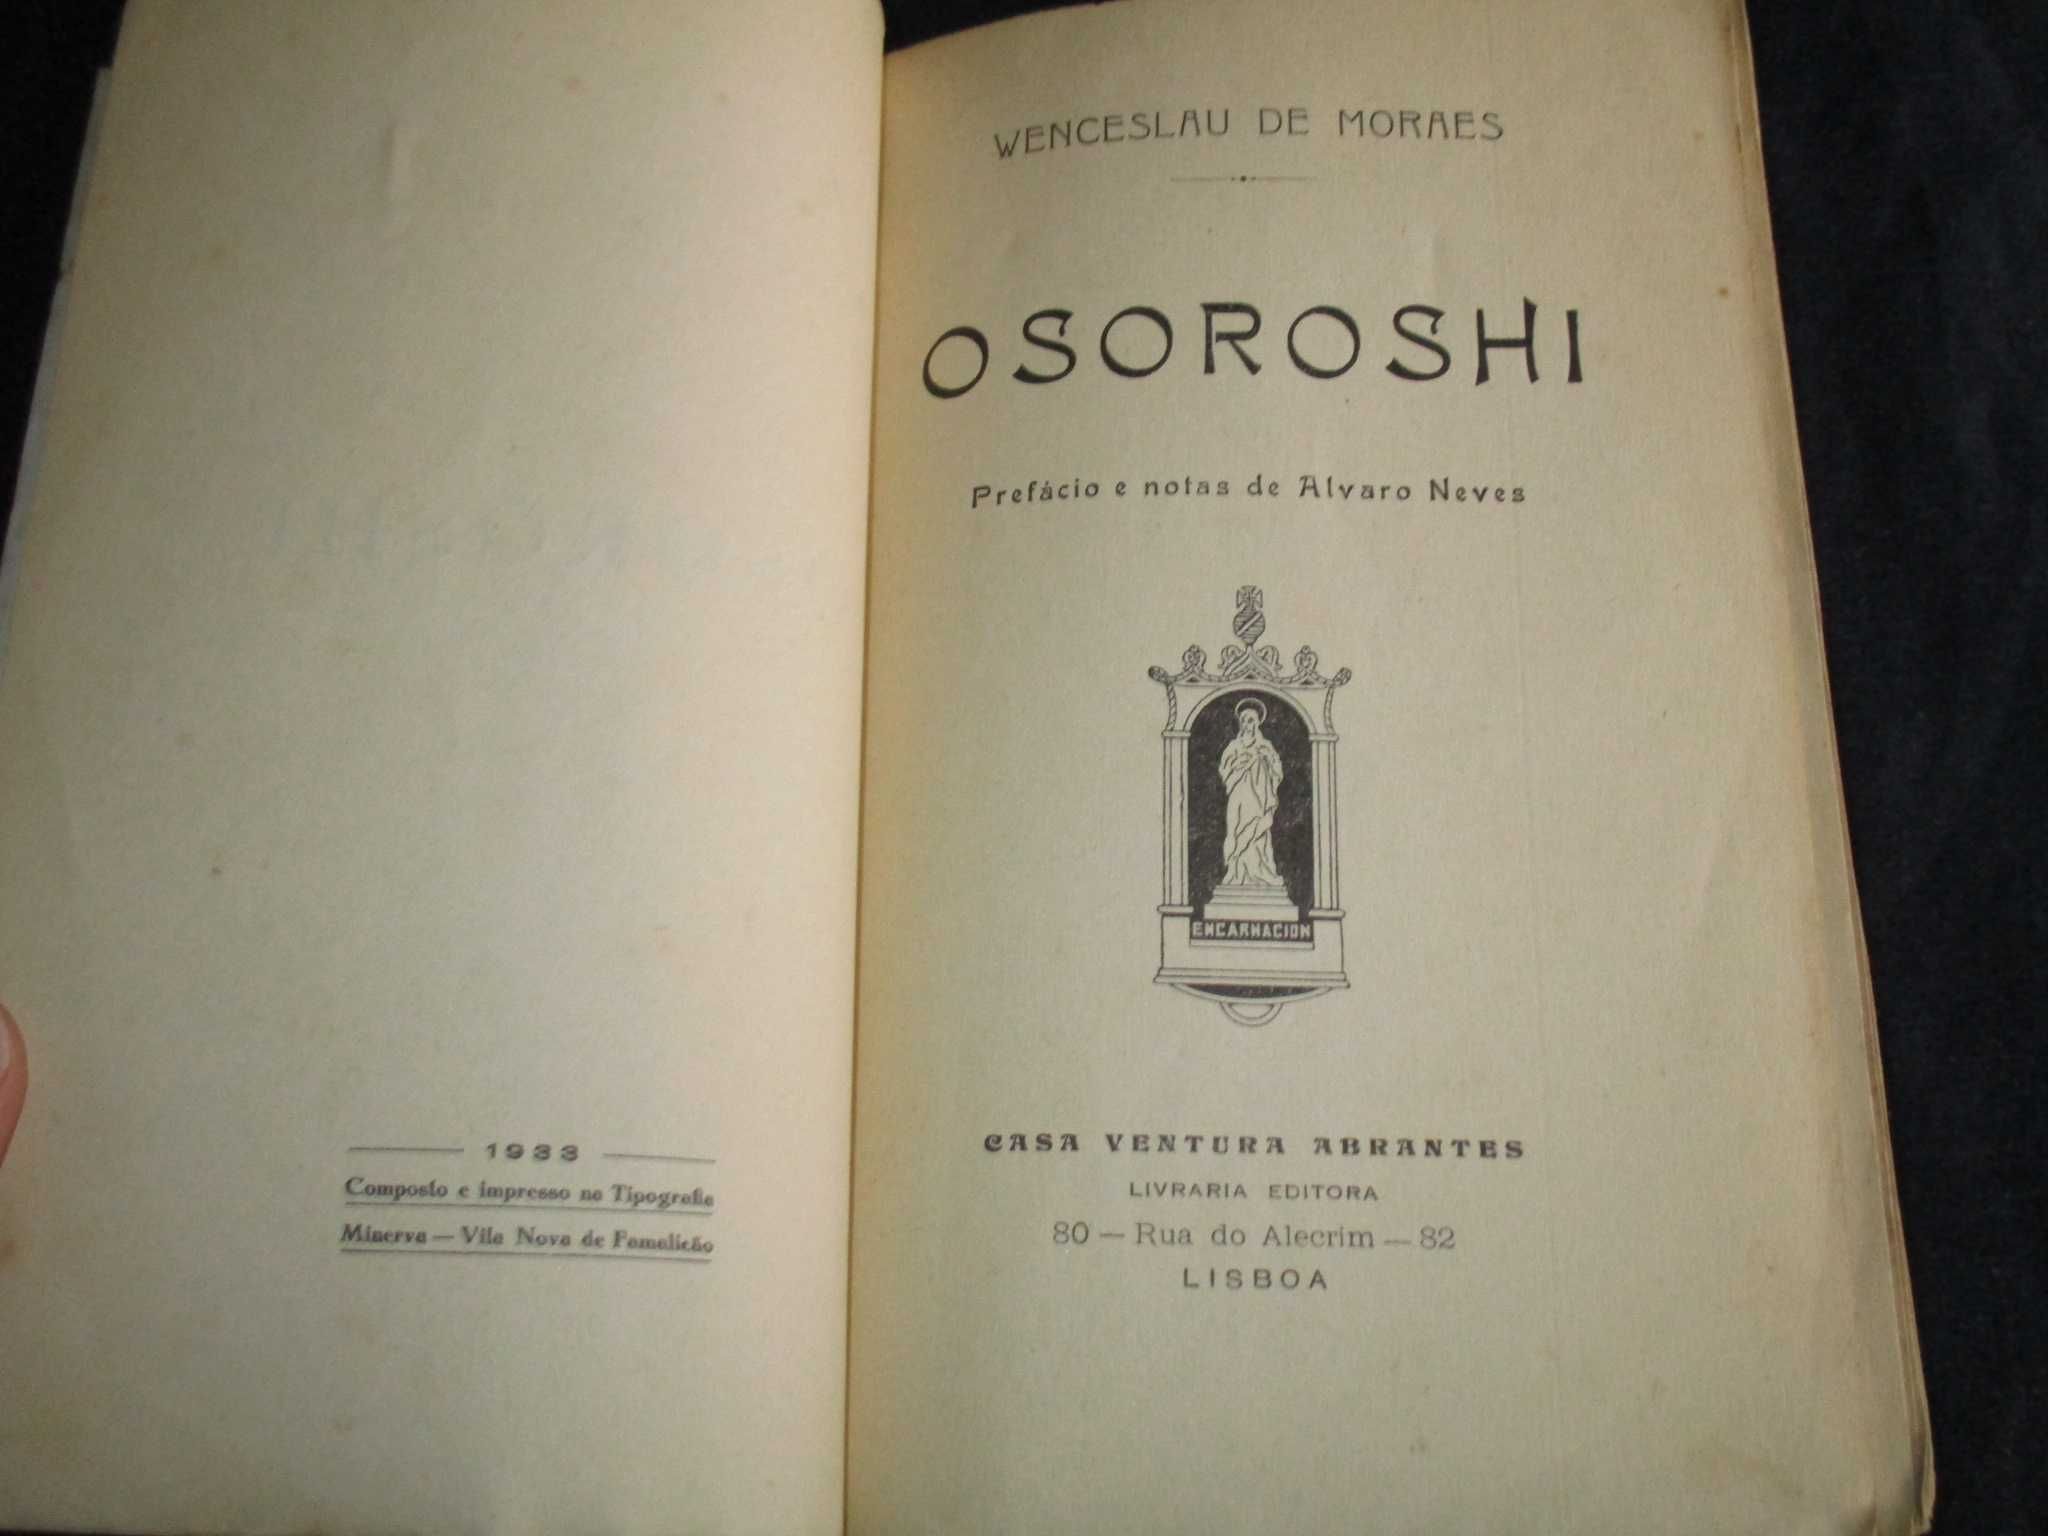 Livro Osoroshi Wenceslau de Moraes 1ª edição 1933